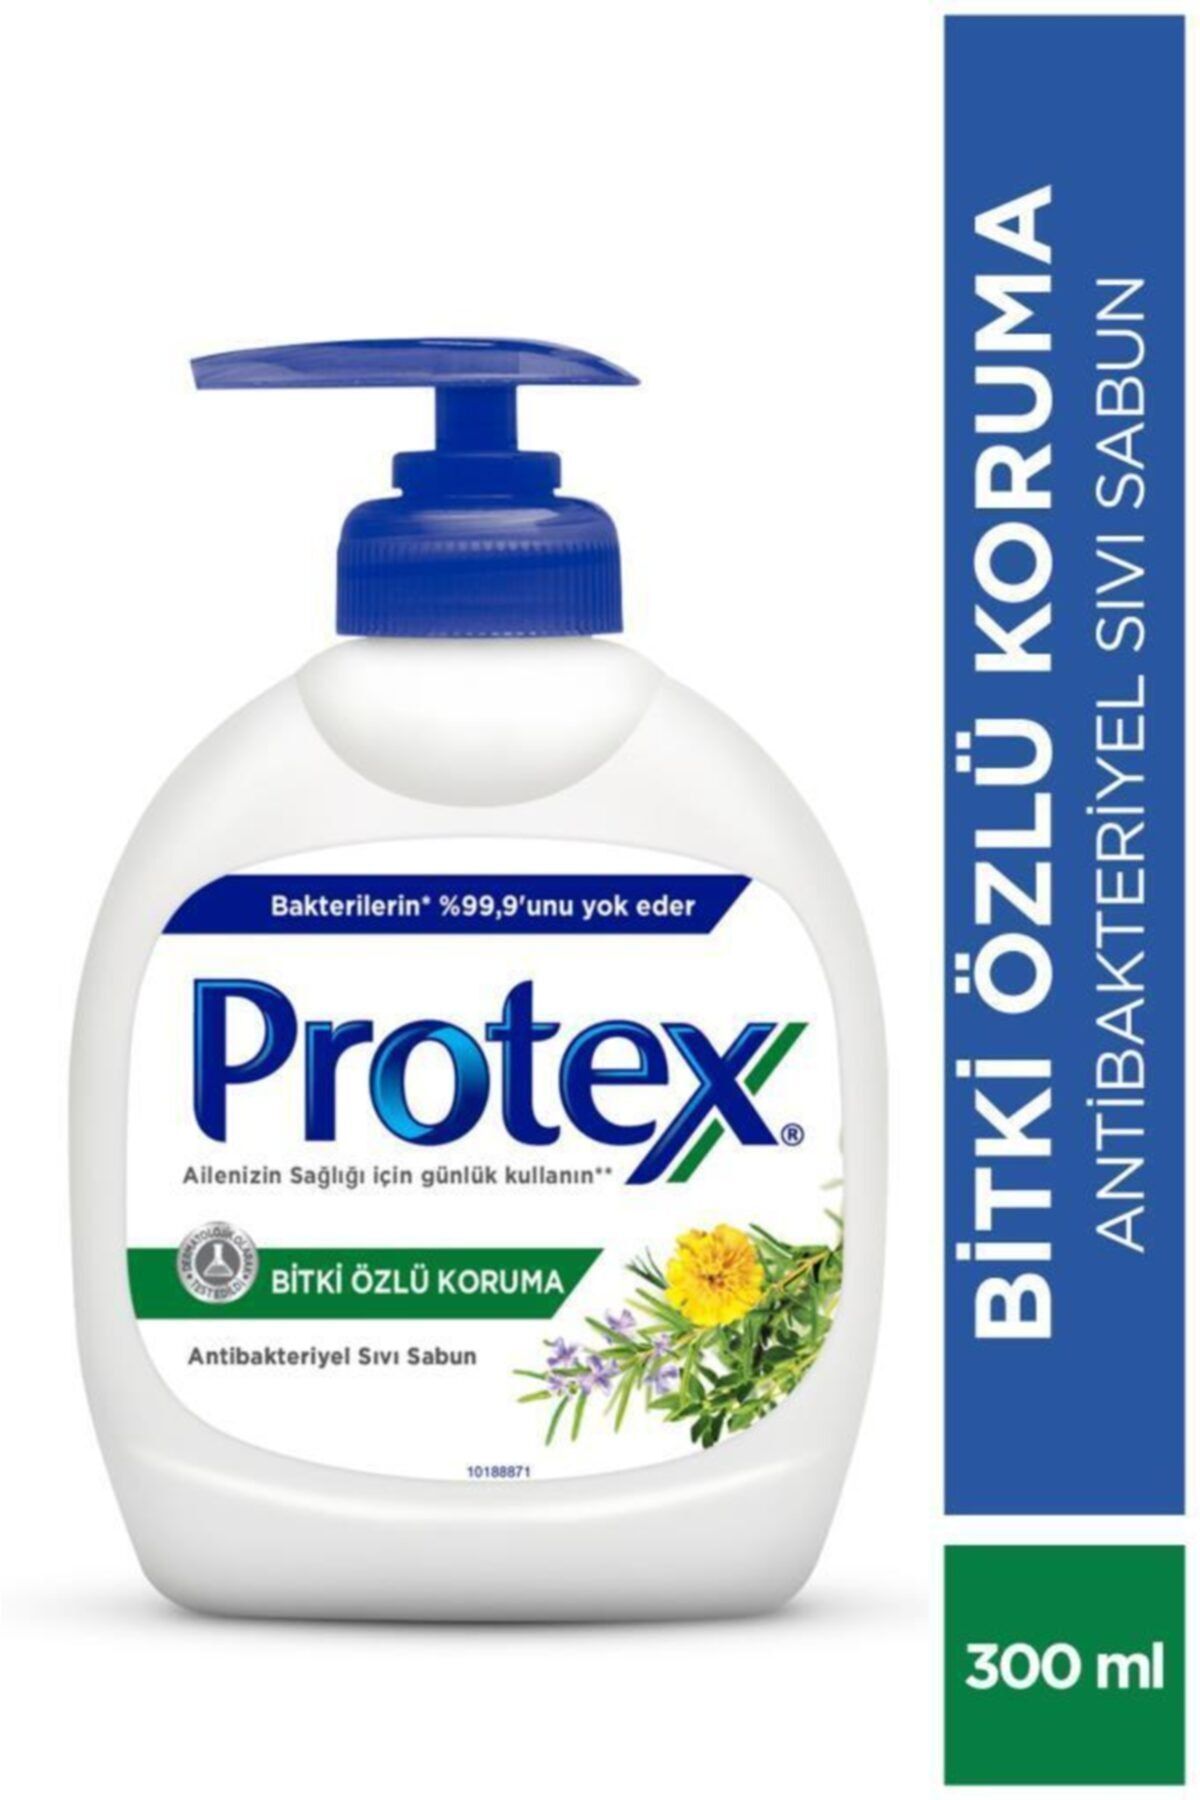 Protex Bitki Özlü Koruma Sıvı Sabun 300 ml